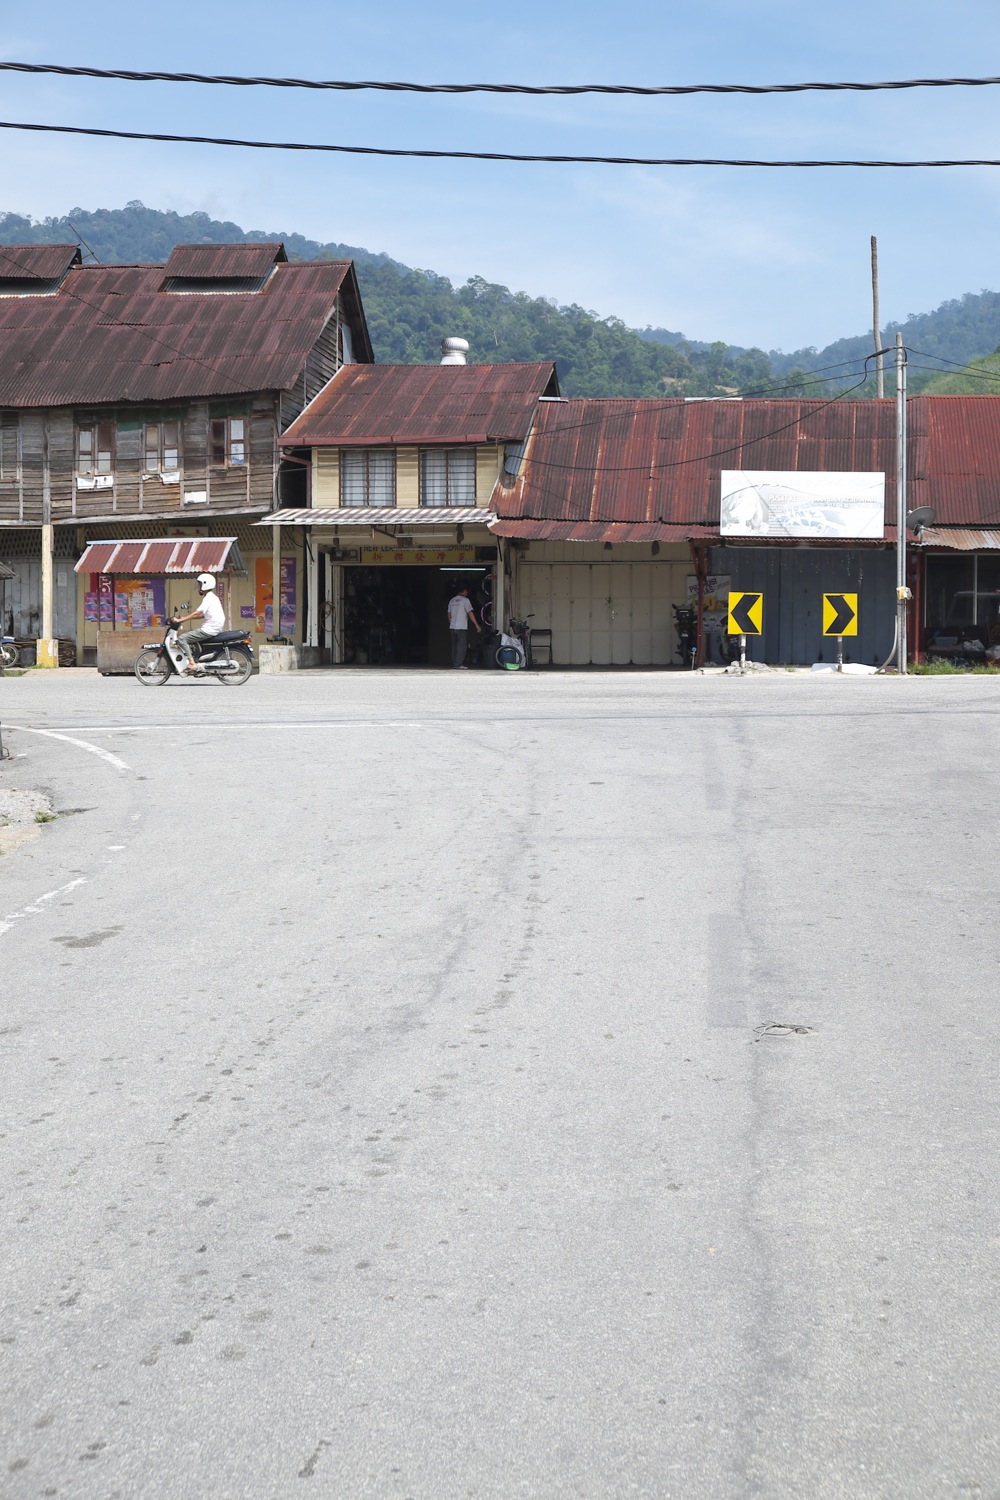 Sauk town in Perak, Malaysia